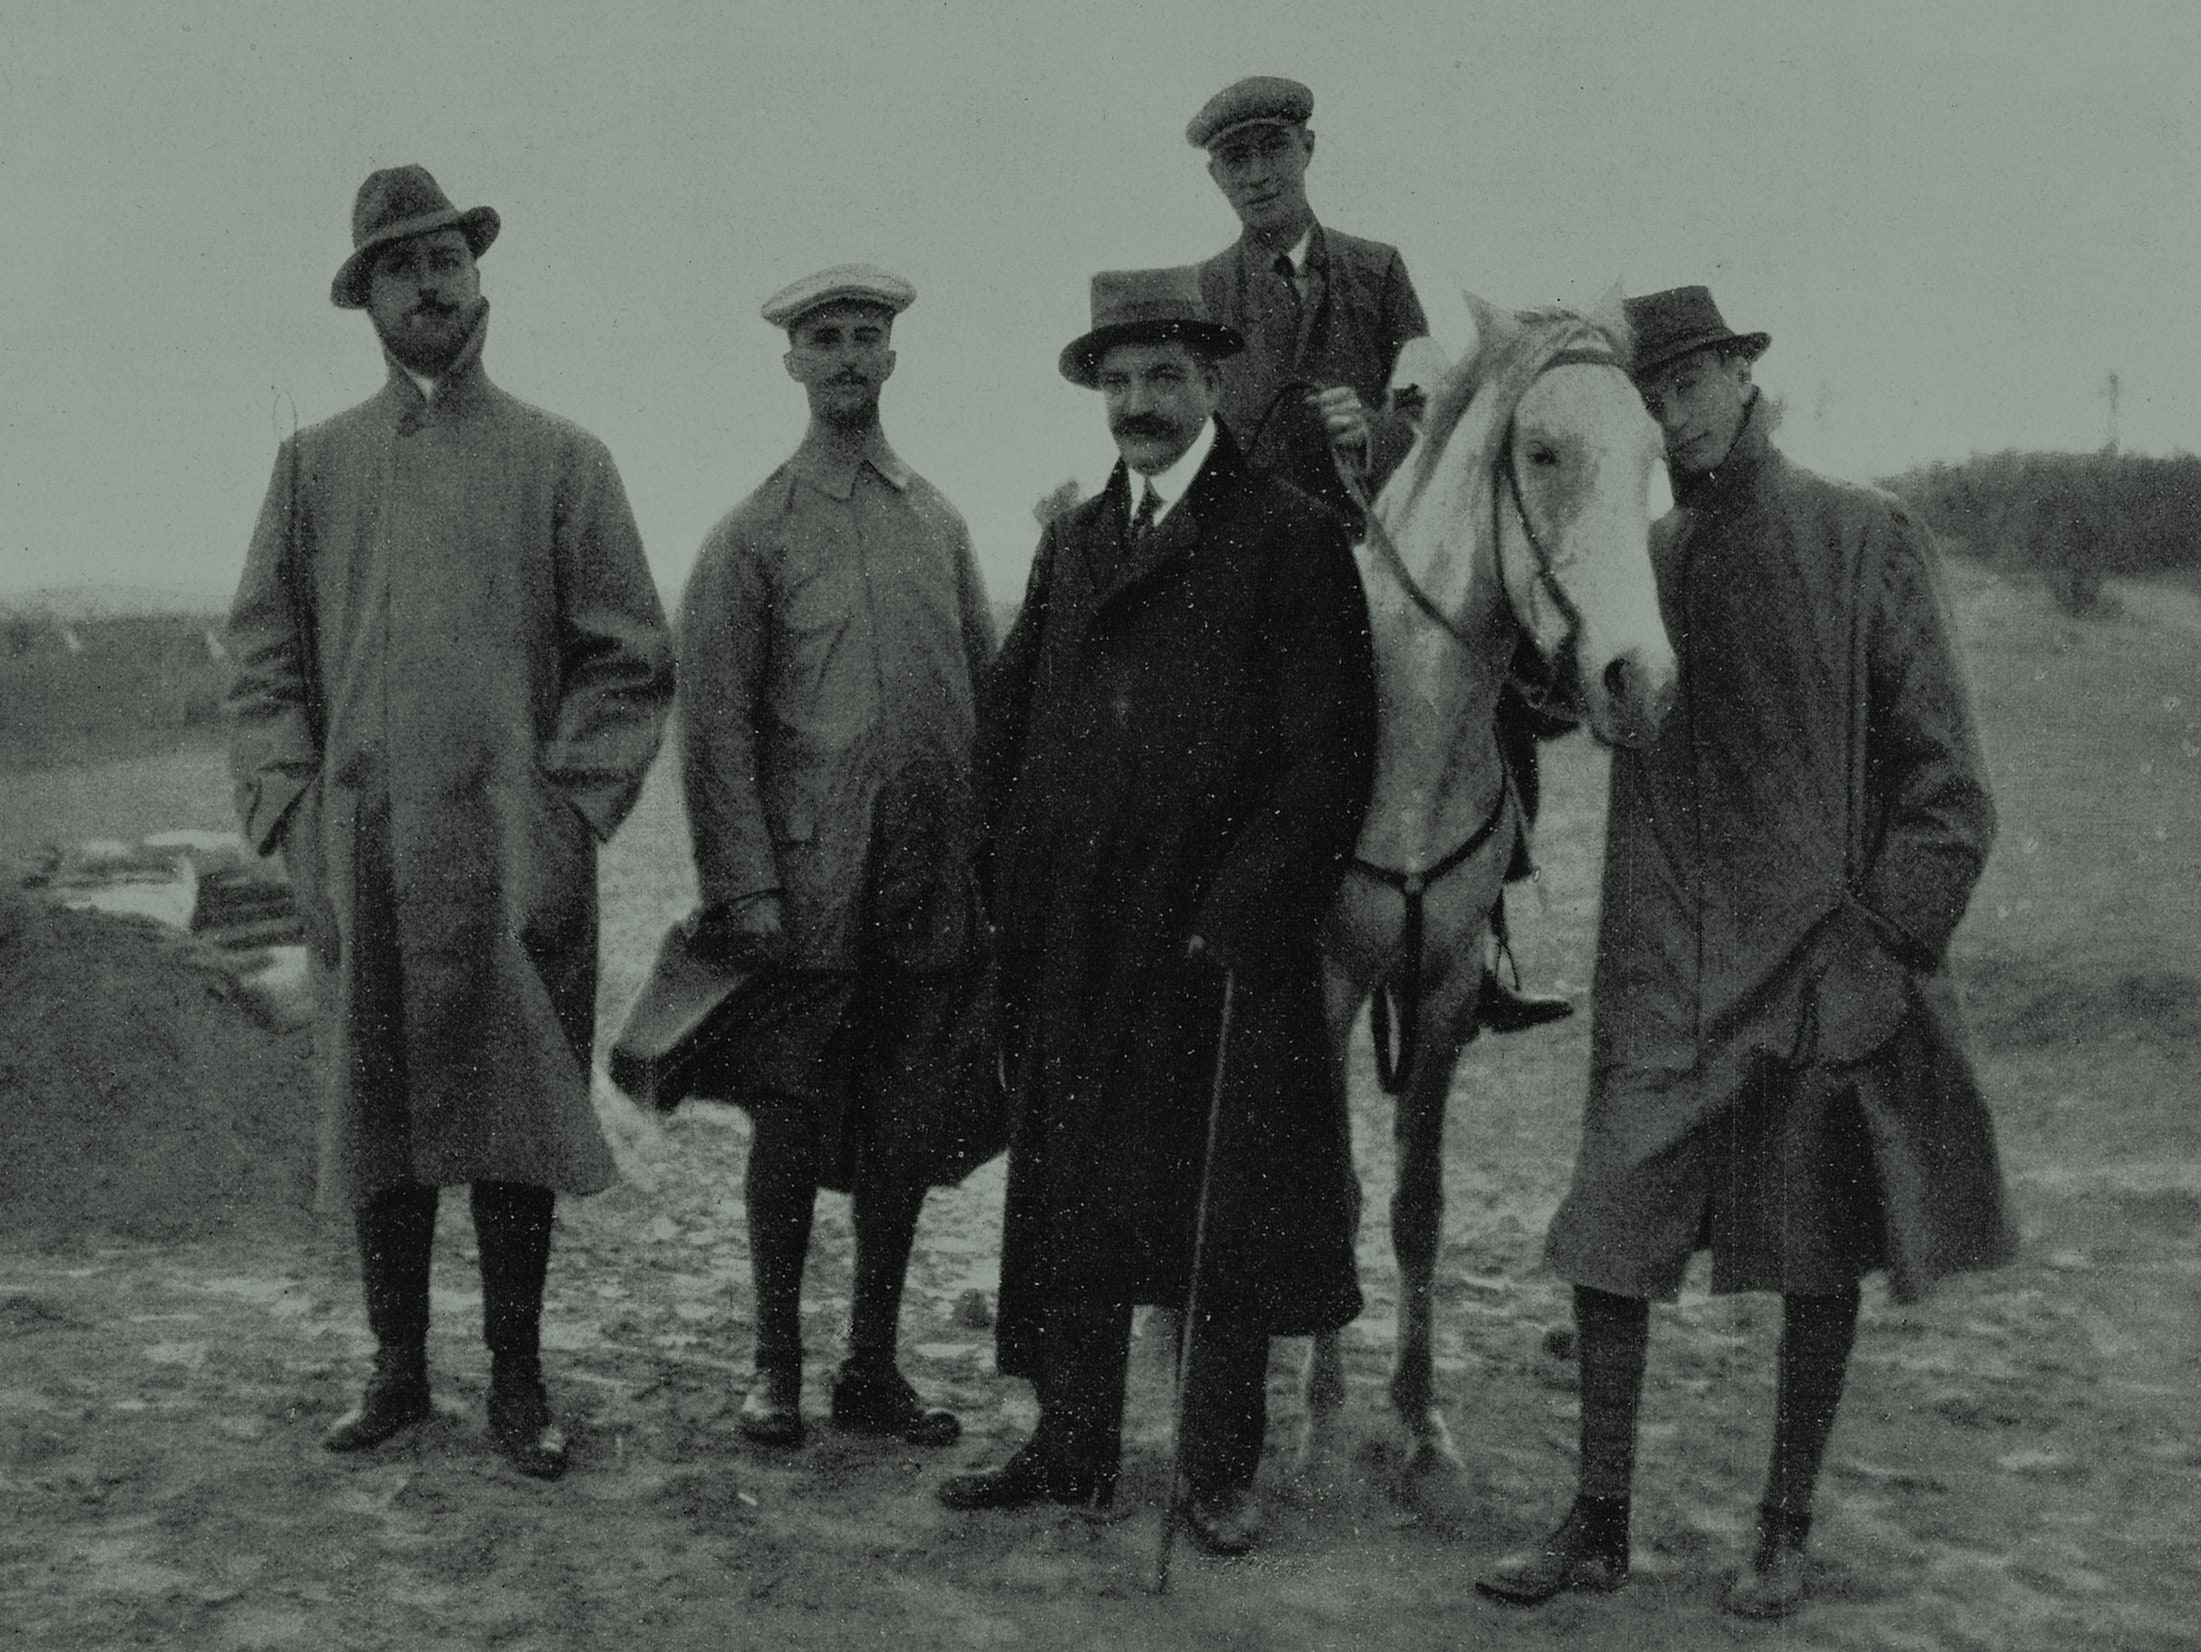 4 homens ficam e um homem em uma pose de cavalo para uma foto.